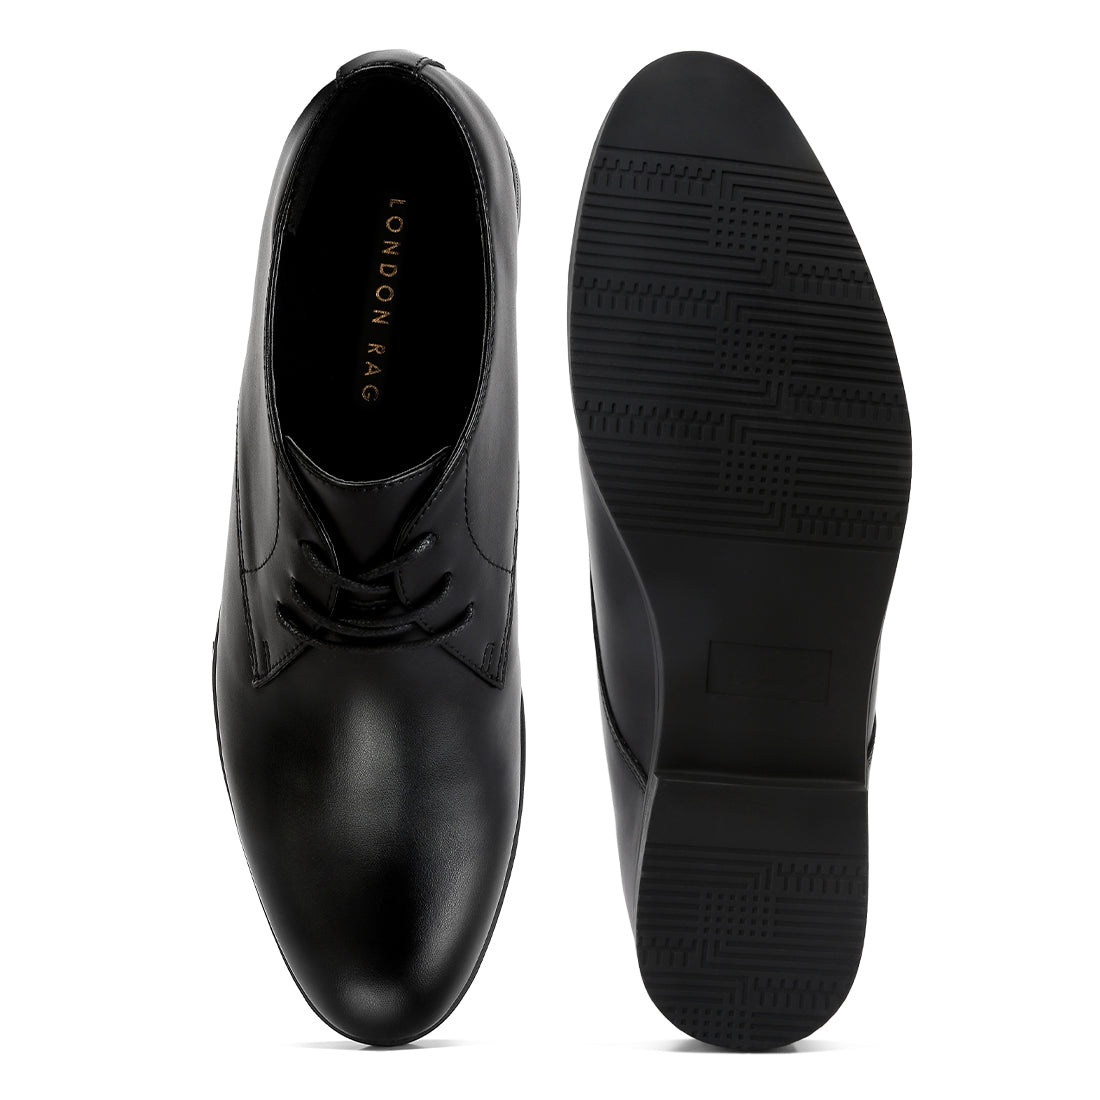 minimalist derby shoes#color_black